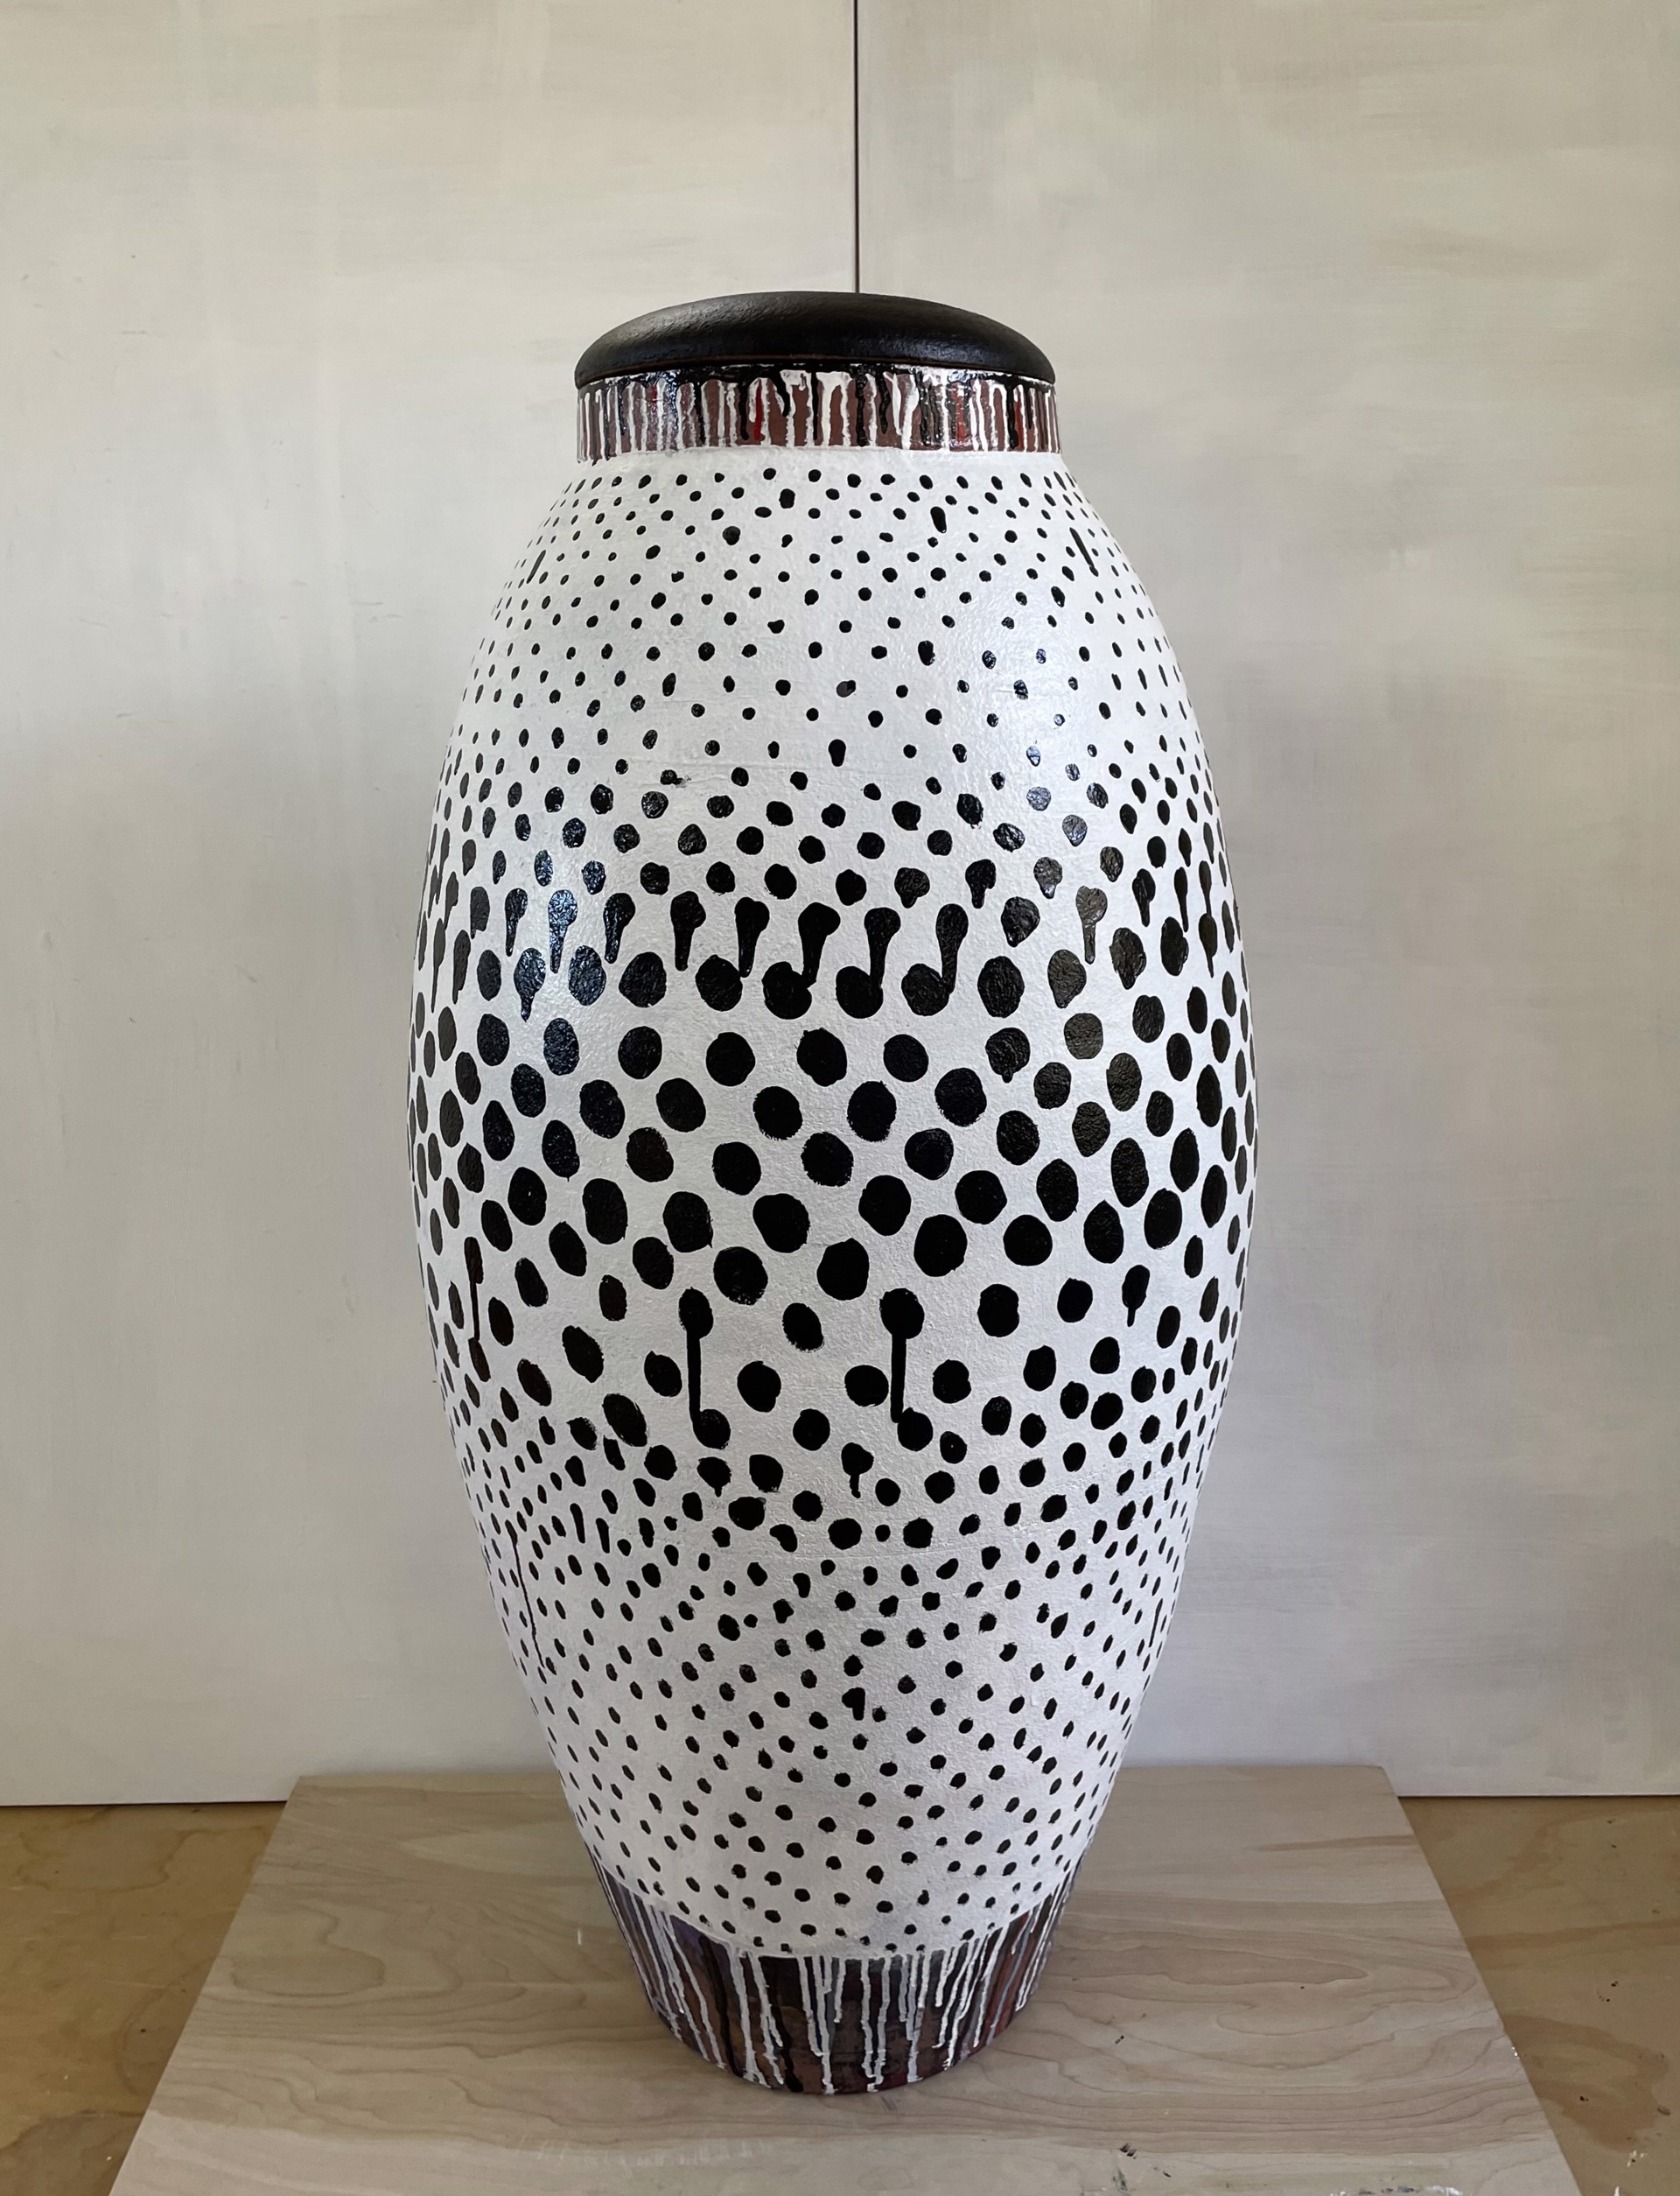 Untitled (by Jane Dahmen and Stephen Proctor, Ceramicist) by Jane Dahmen